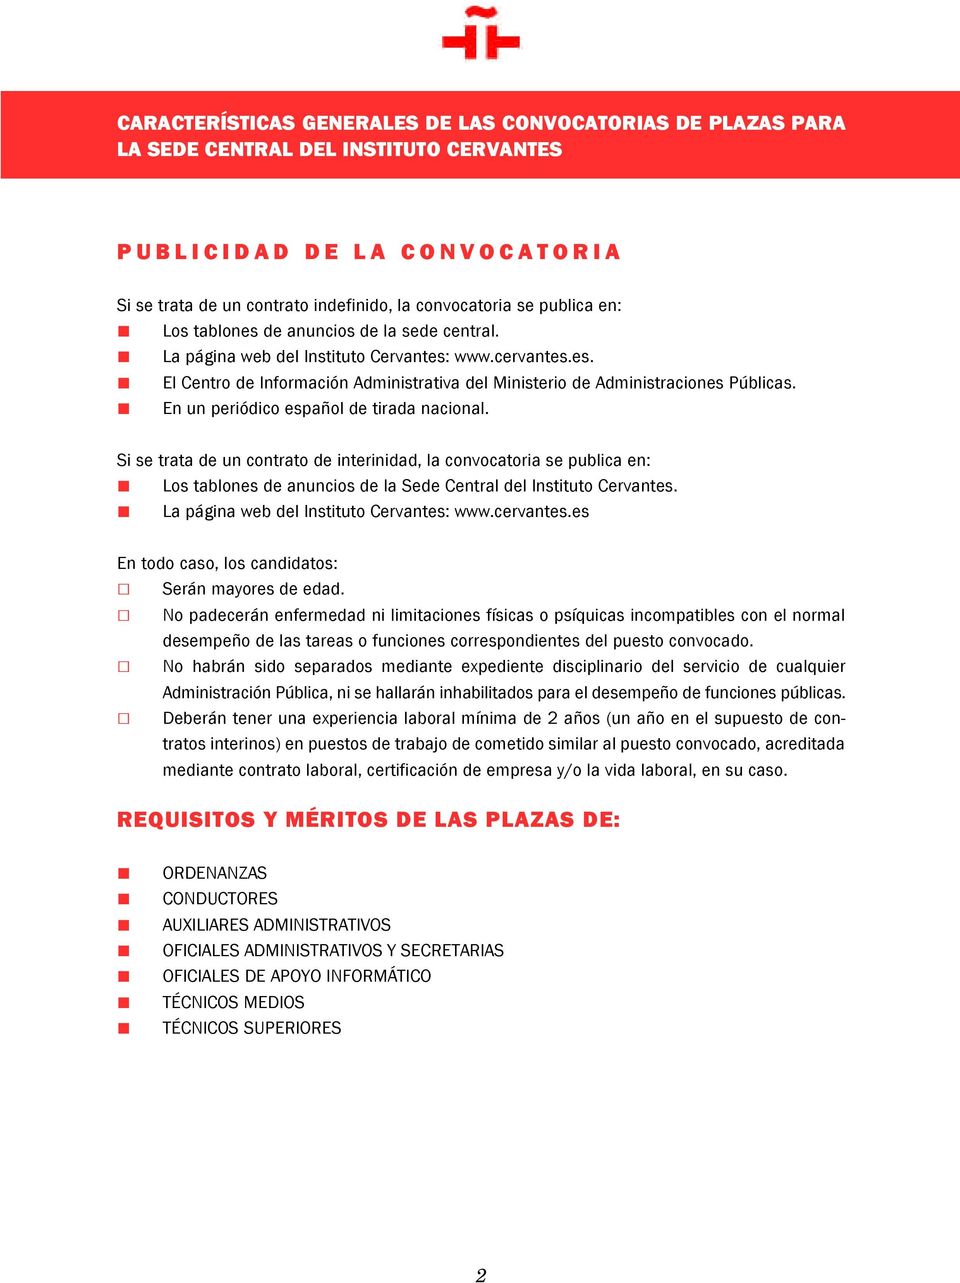 En un periódico español de tirada nacional. Si se trata de un contrato de interinidad, la convocatoria se publica en: Los tablones de anuncios de la Sede Central del Instituto Cervantes.